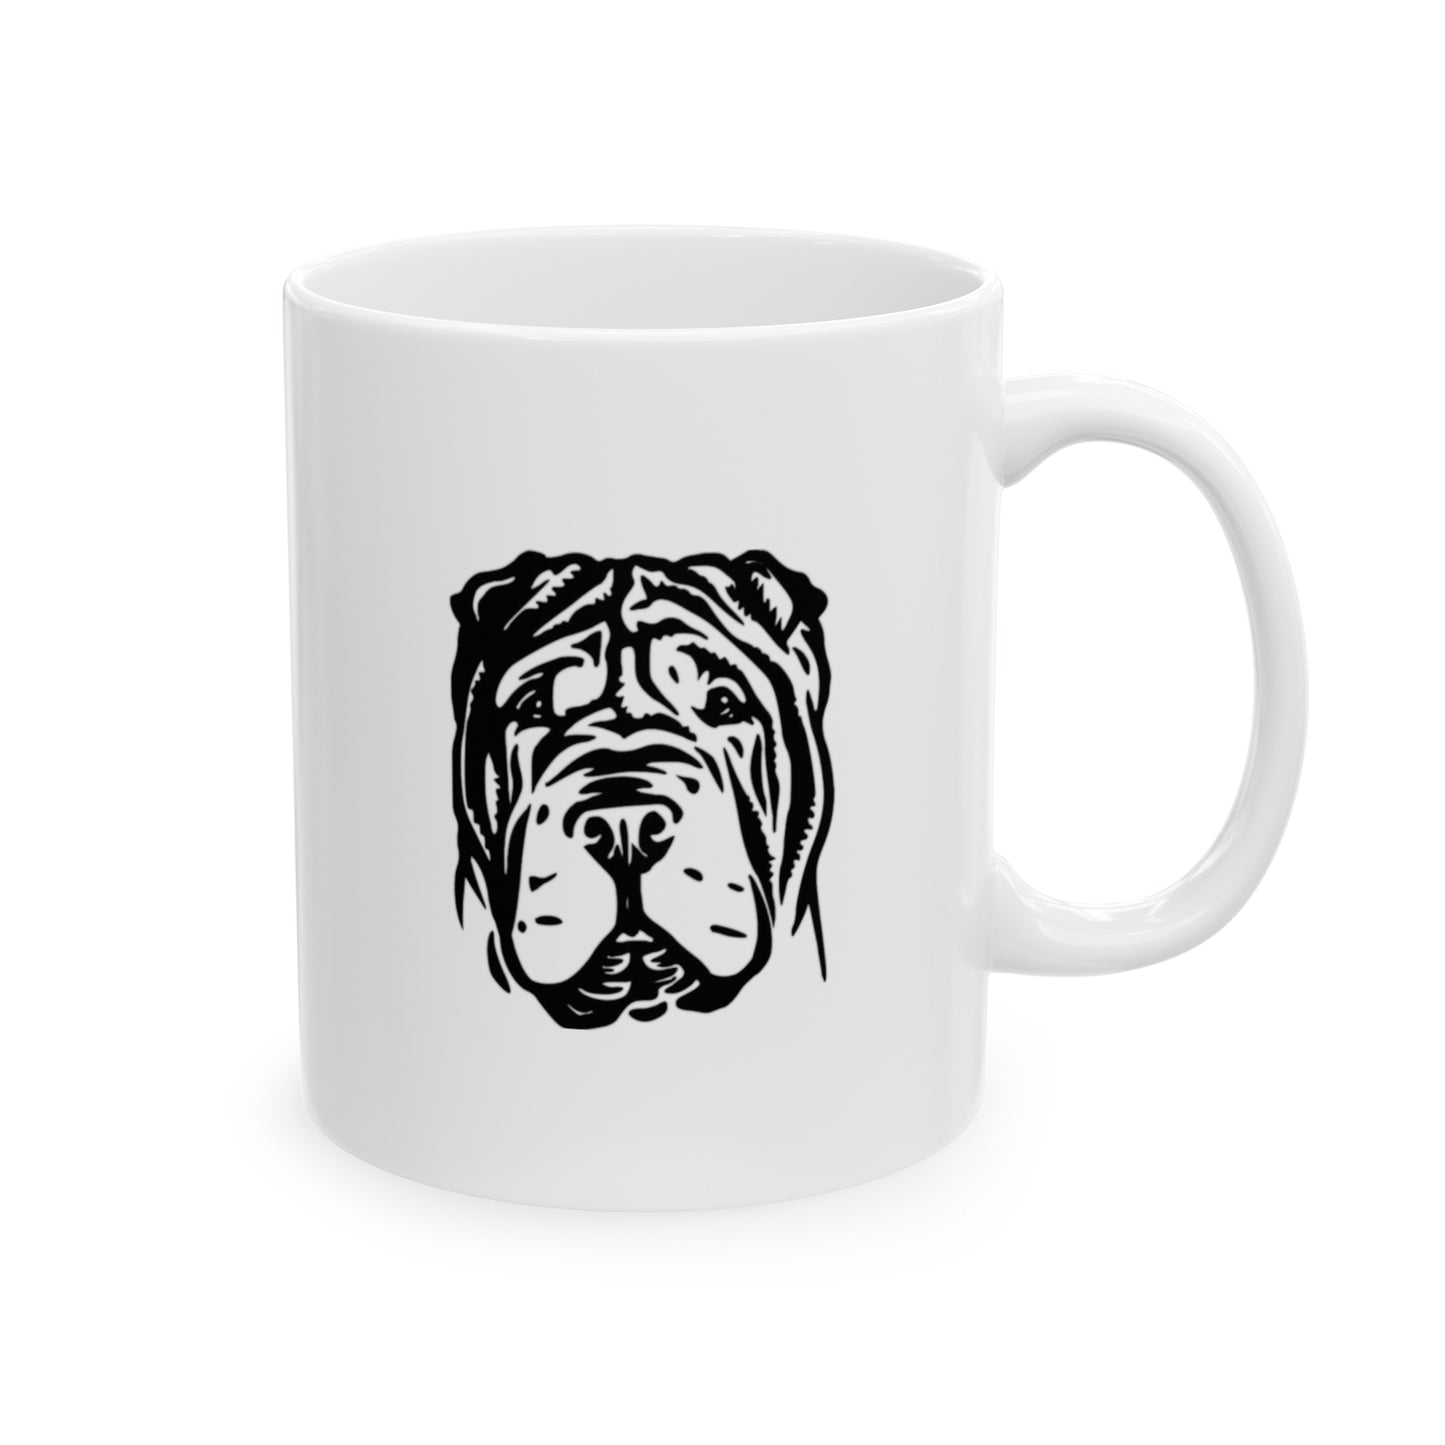 "Shar Pei Dog" Ceramic Mug 11oz